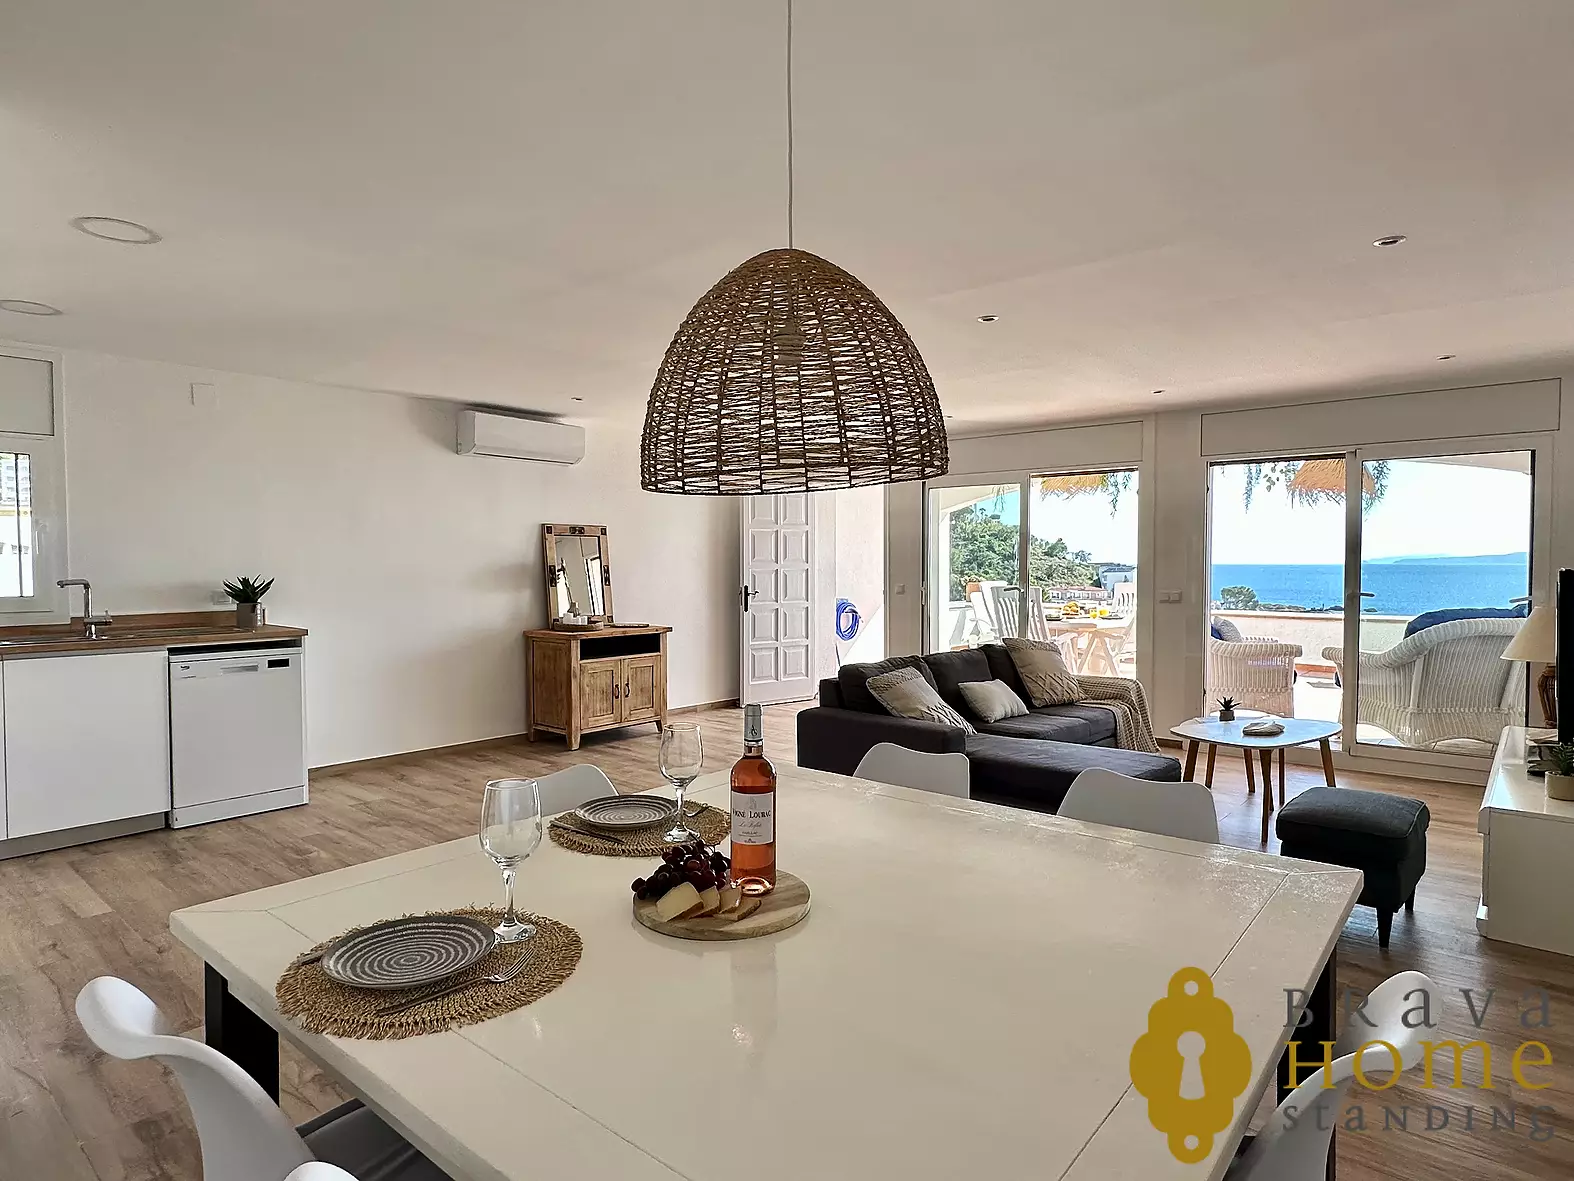 Espectacular apartamento con vistas al mar y garaje doble en Canyelles Petites